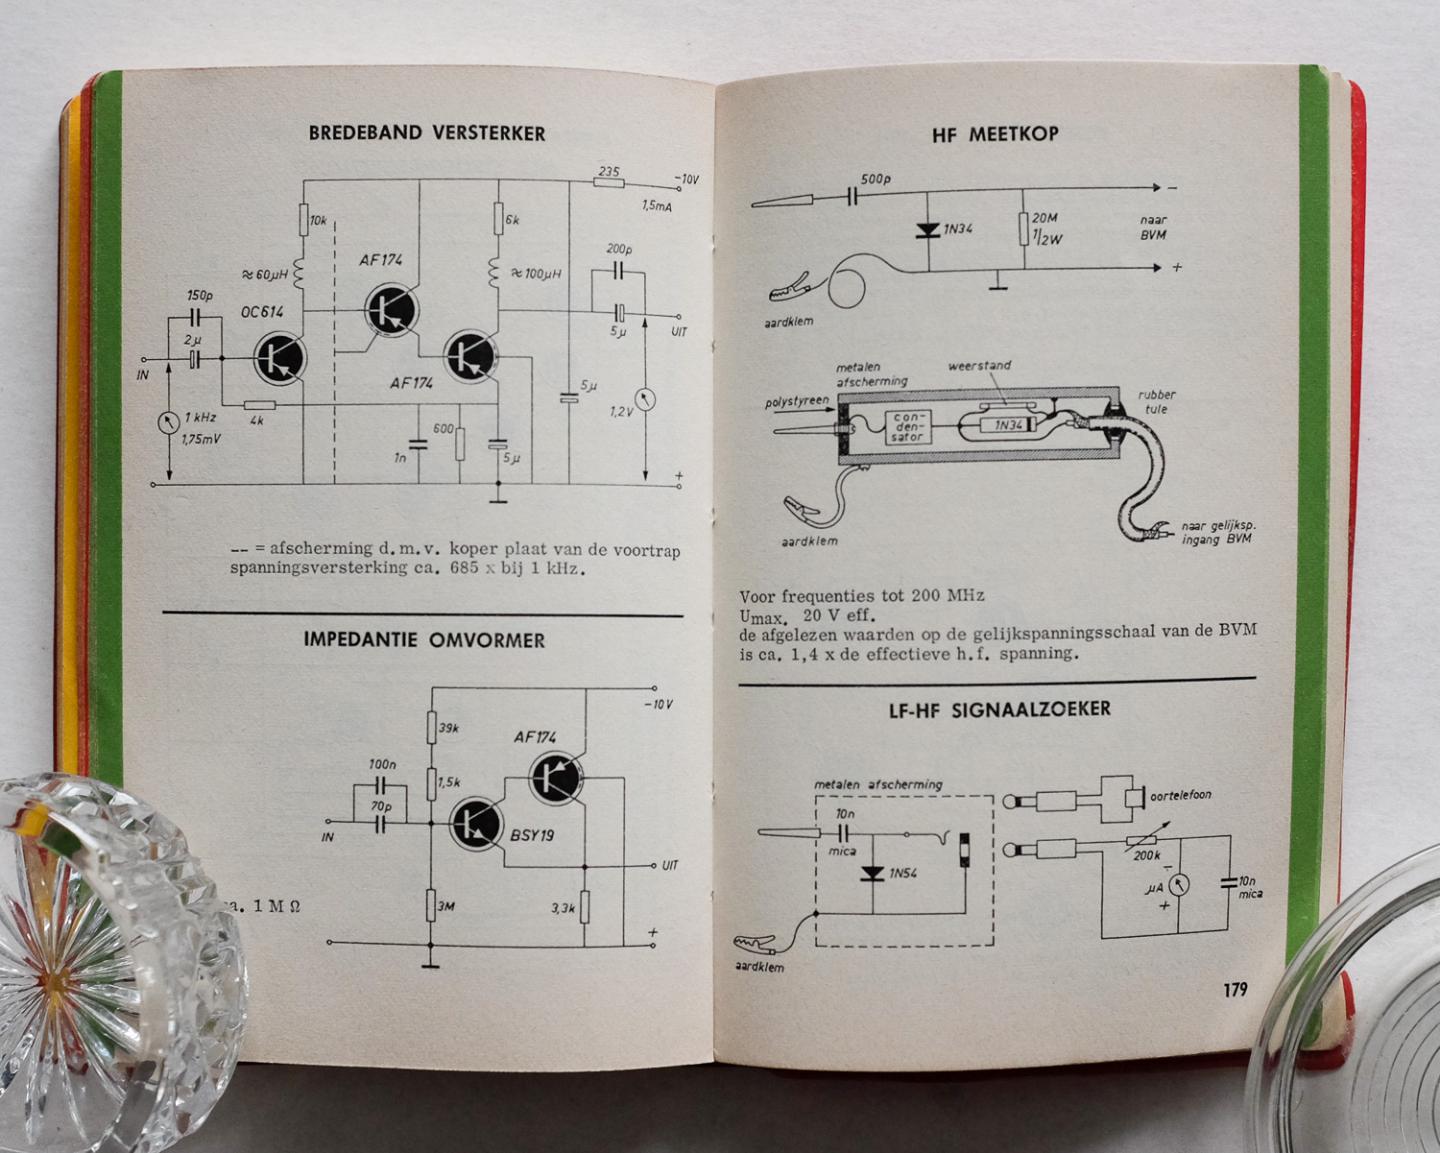 De Muiderkring - Elektronisch Jaarboekje 1970 / samengesteld en uitgegeven door de Muiderkring